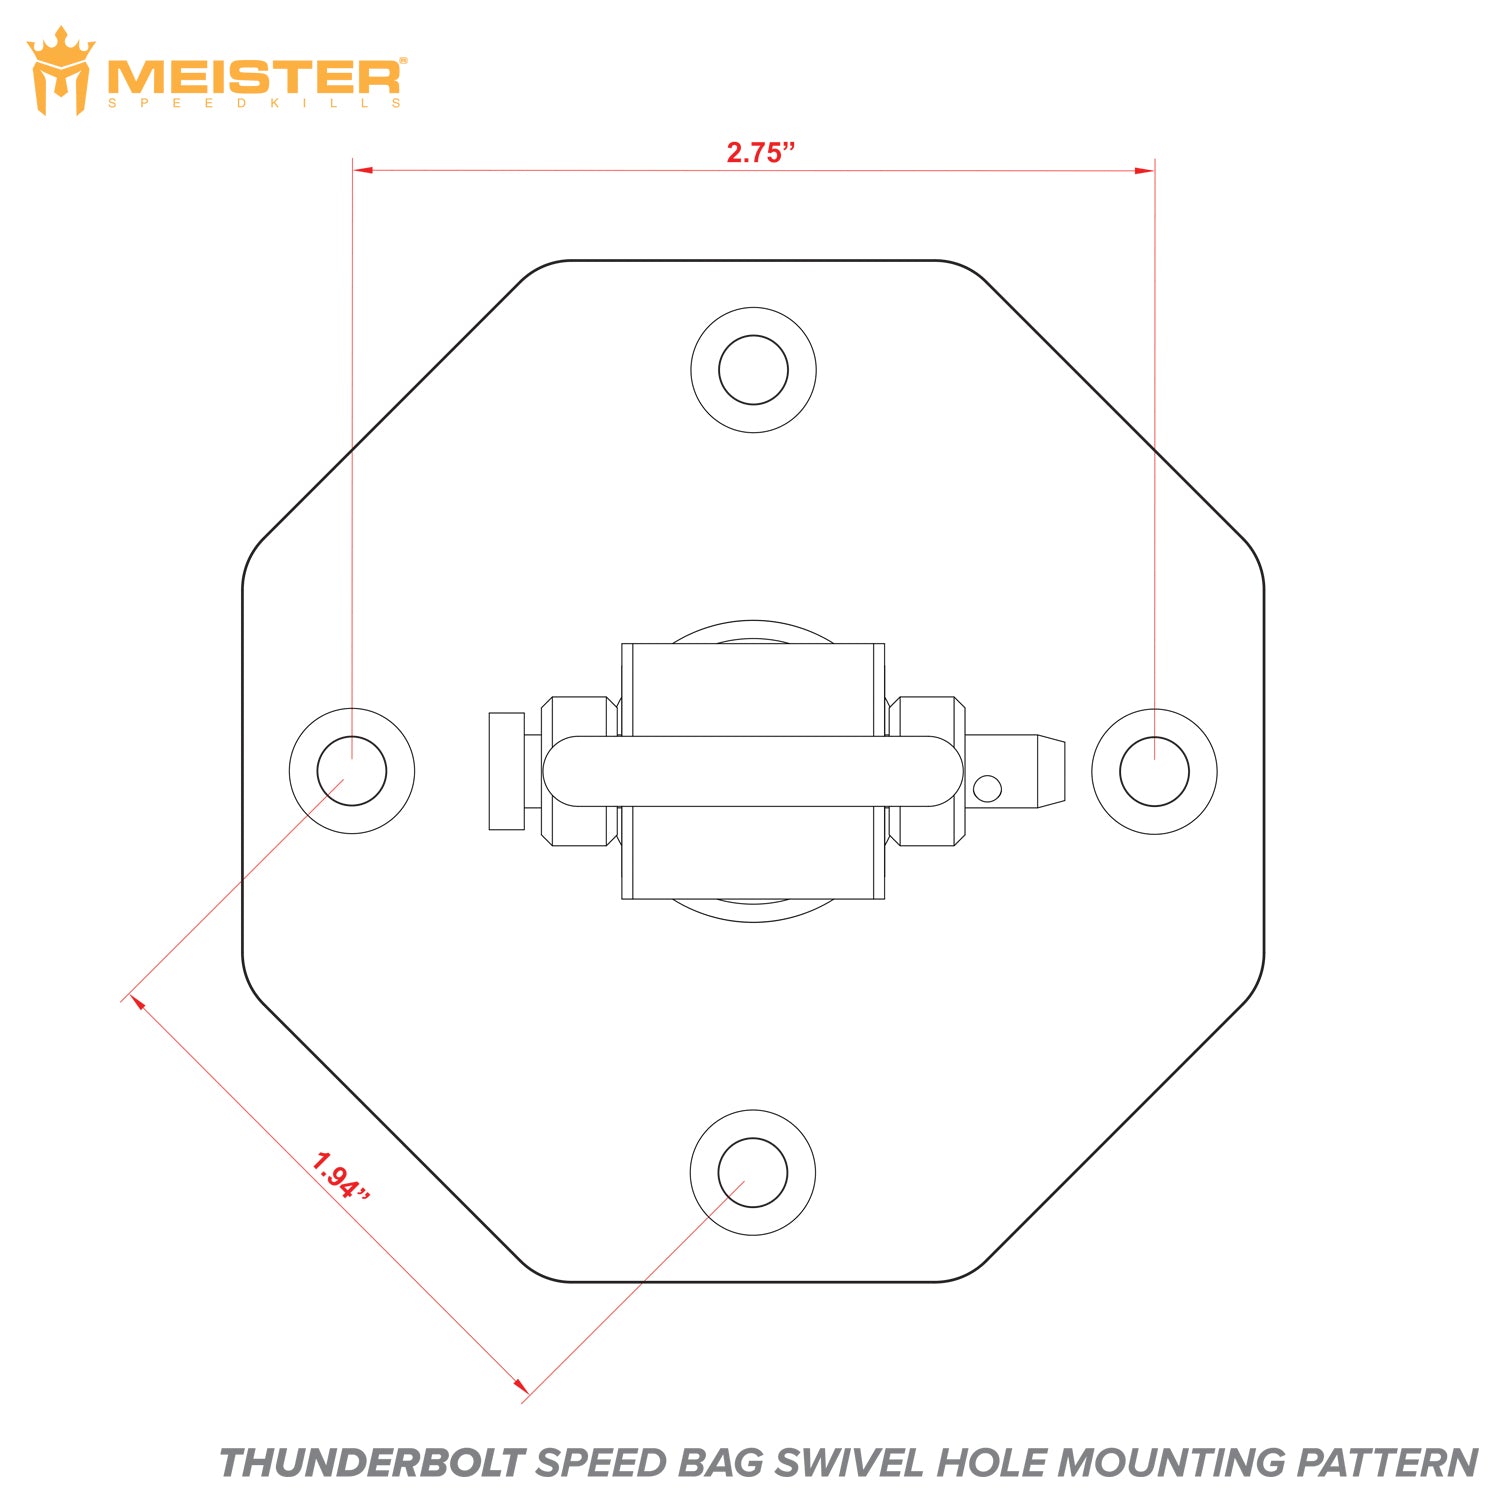 Meister SpeedKills Thunderbolt Triple-Bearing Speed Bag Swivel